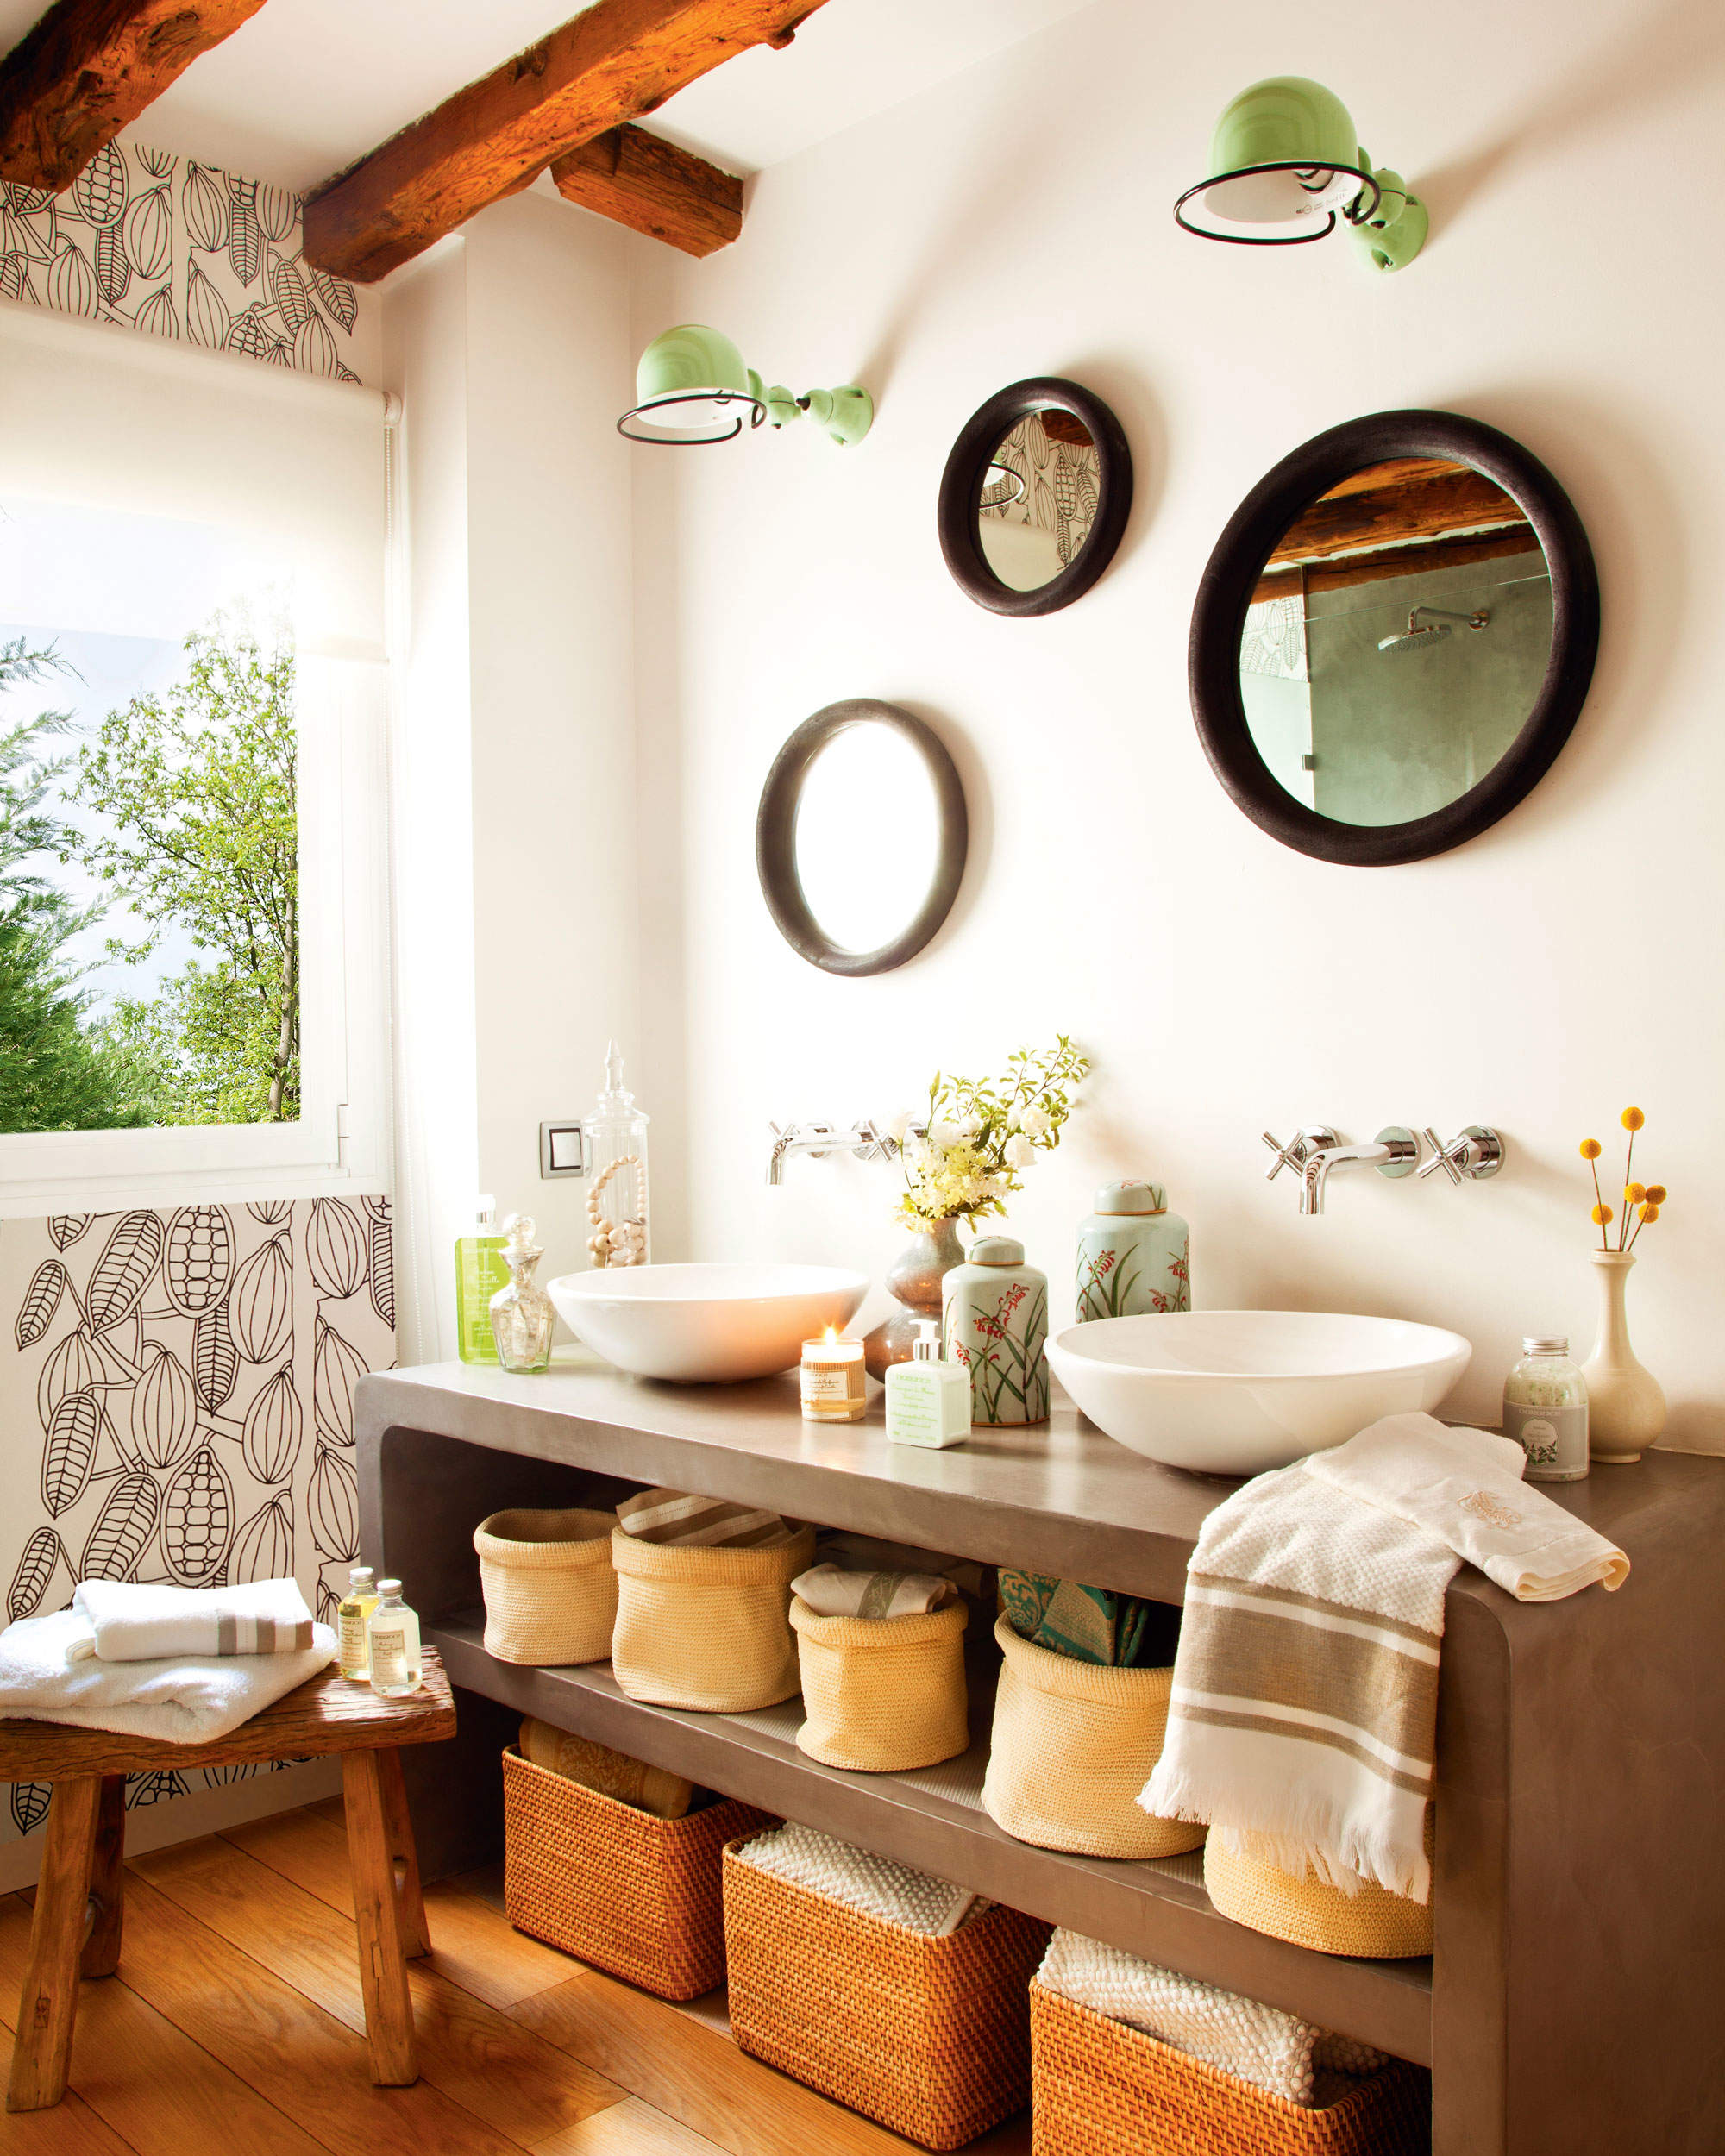 Baño con mueble bajolavabo de microcemento, cestas y espejos encima.